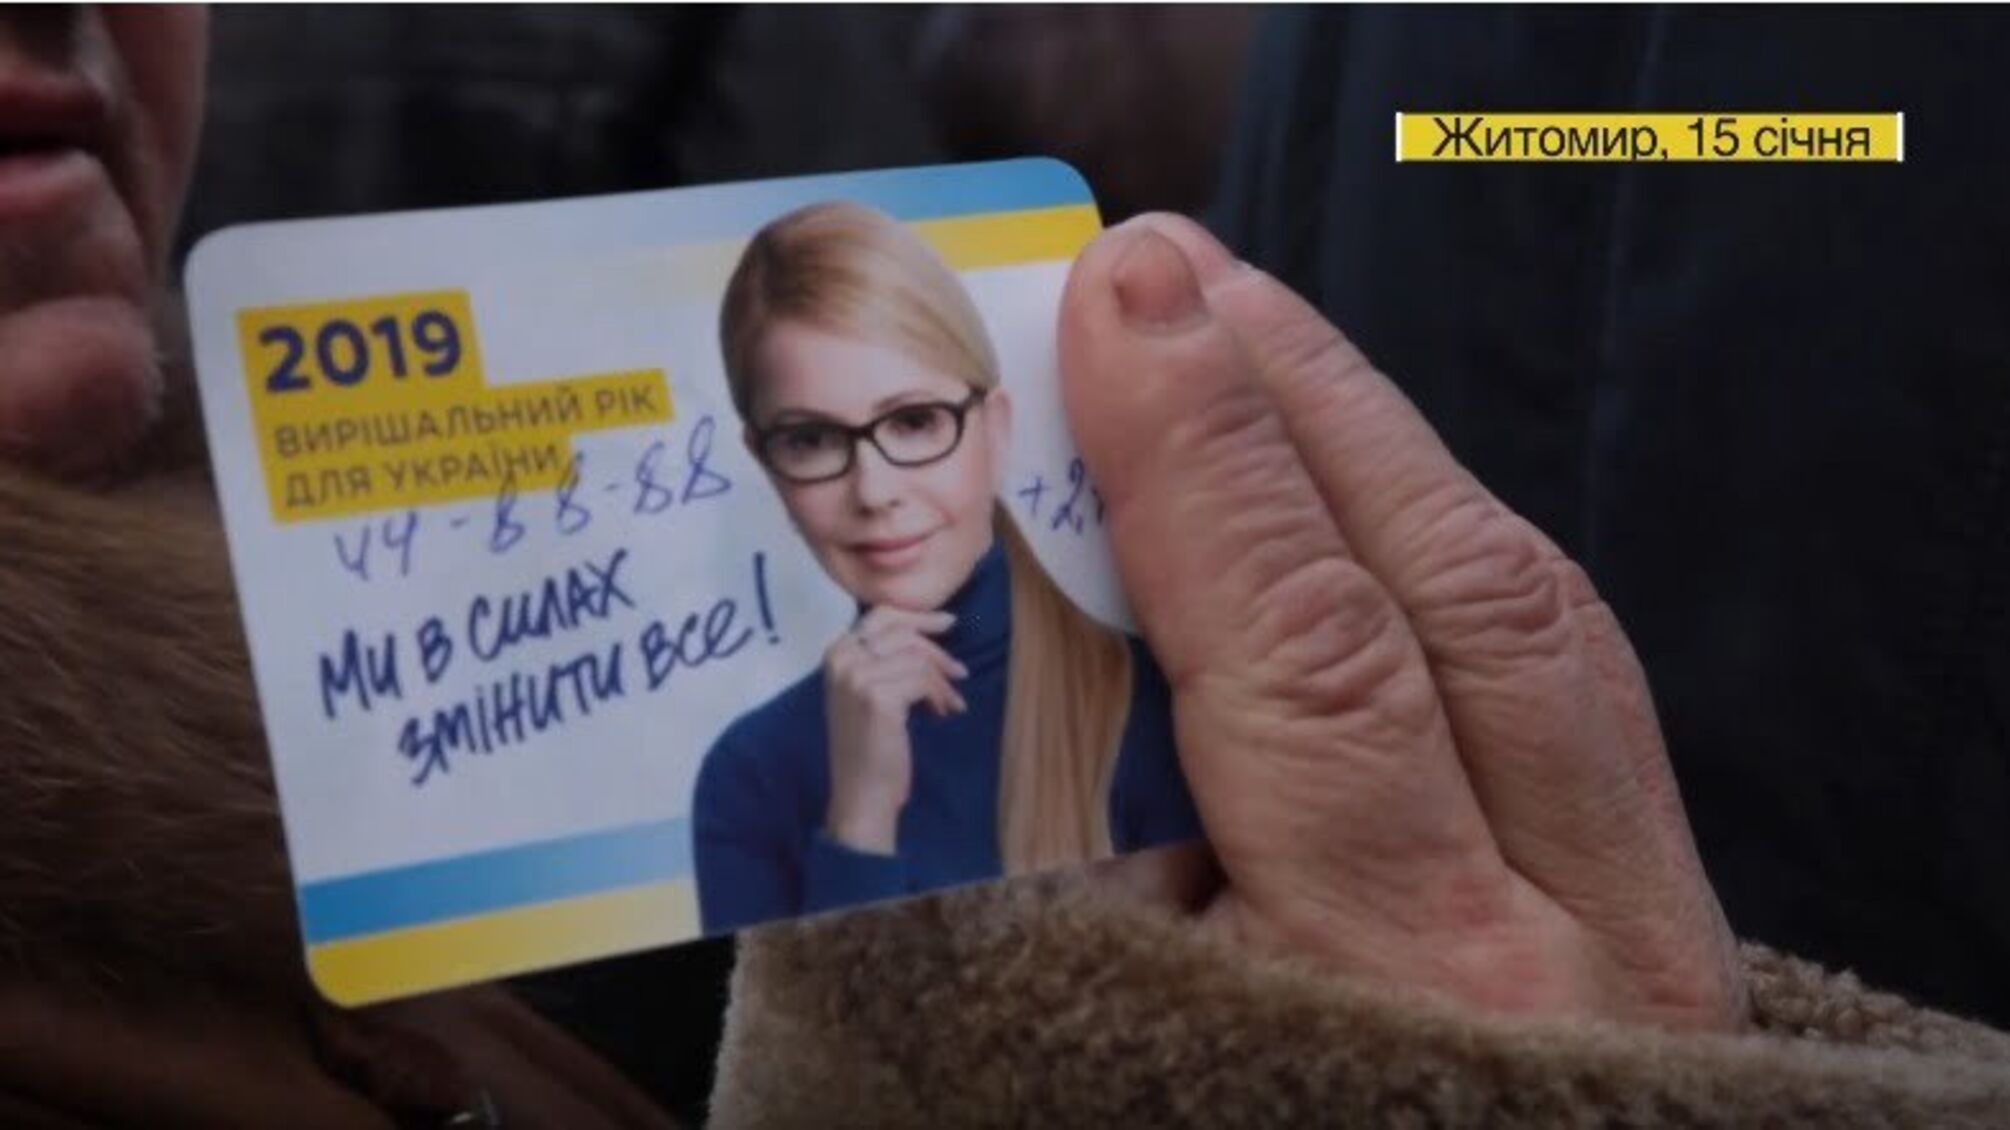 Окуляри замість гречки – новий курс підкупу виборців від Юлії Тимошенко? (ВІДЕО)